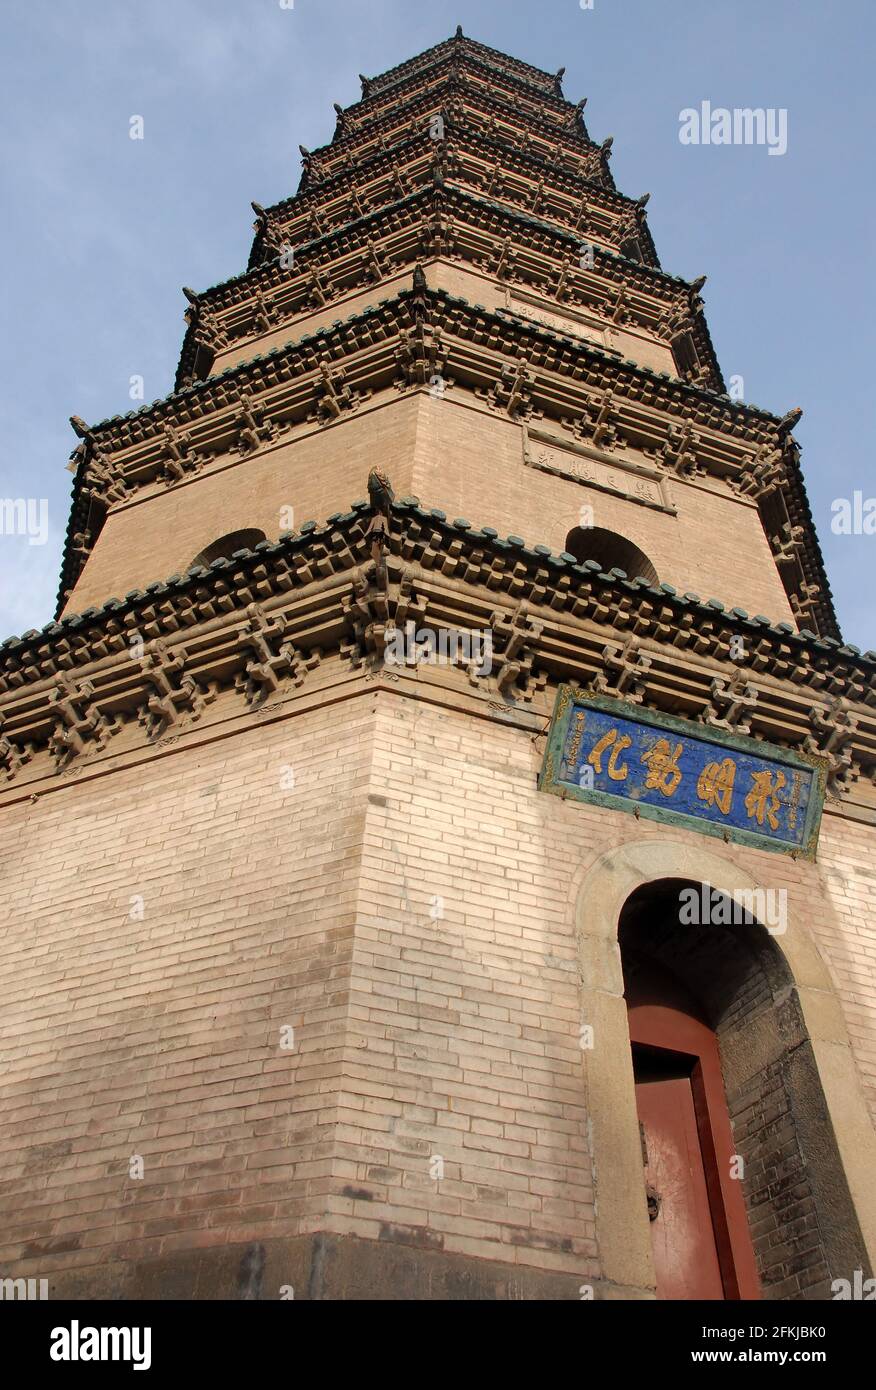 Temple Jinci près de Taiyuan, Shanxi, Chine. Vue de la pagode au temple de Jinci prise de la base avec une distorsion de perspective pour souligner la hauteur. Banque D'Images